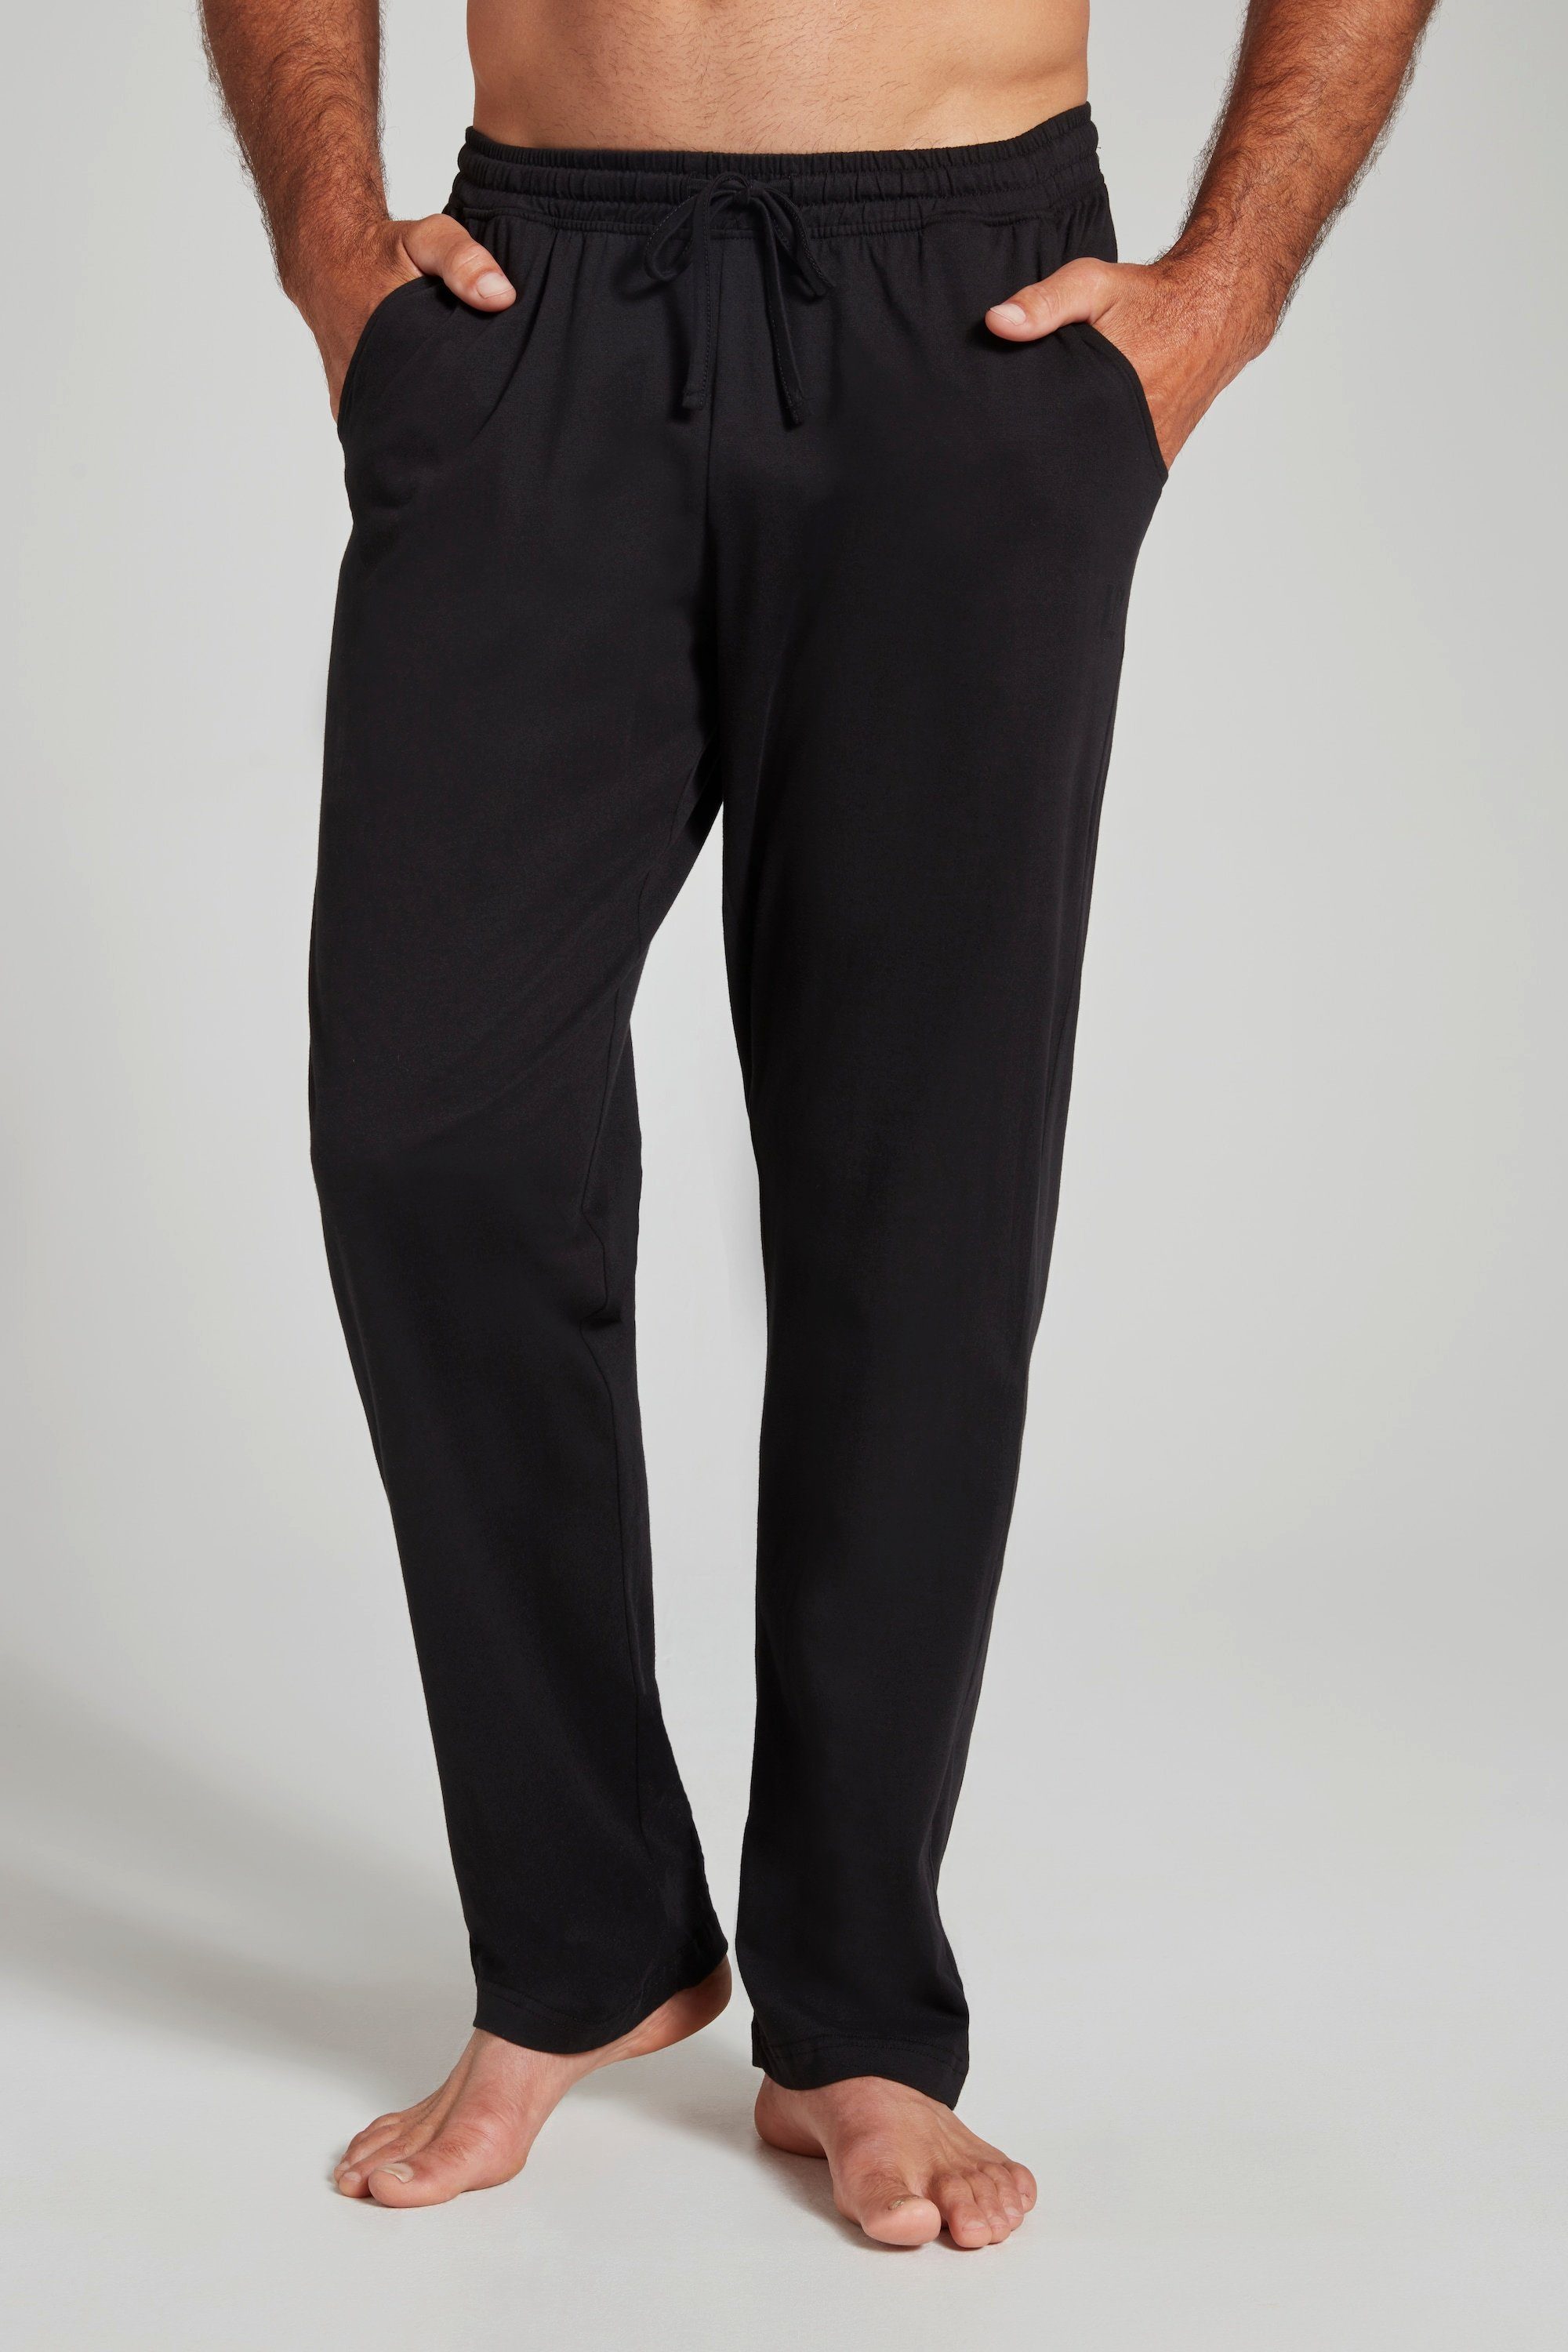 JP1880 Schlafanzug Schlafanzug-Hose Homewear lange Form Elastikbund schwarz